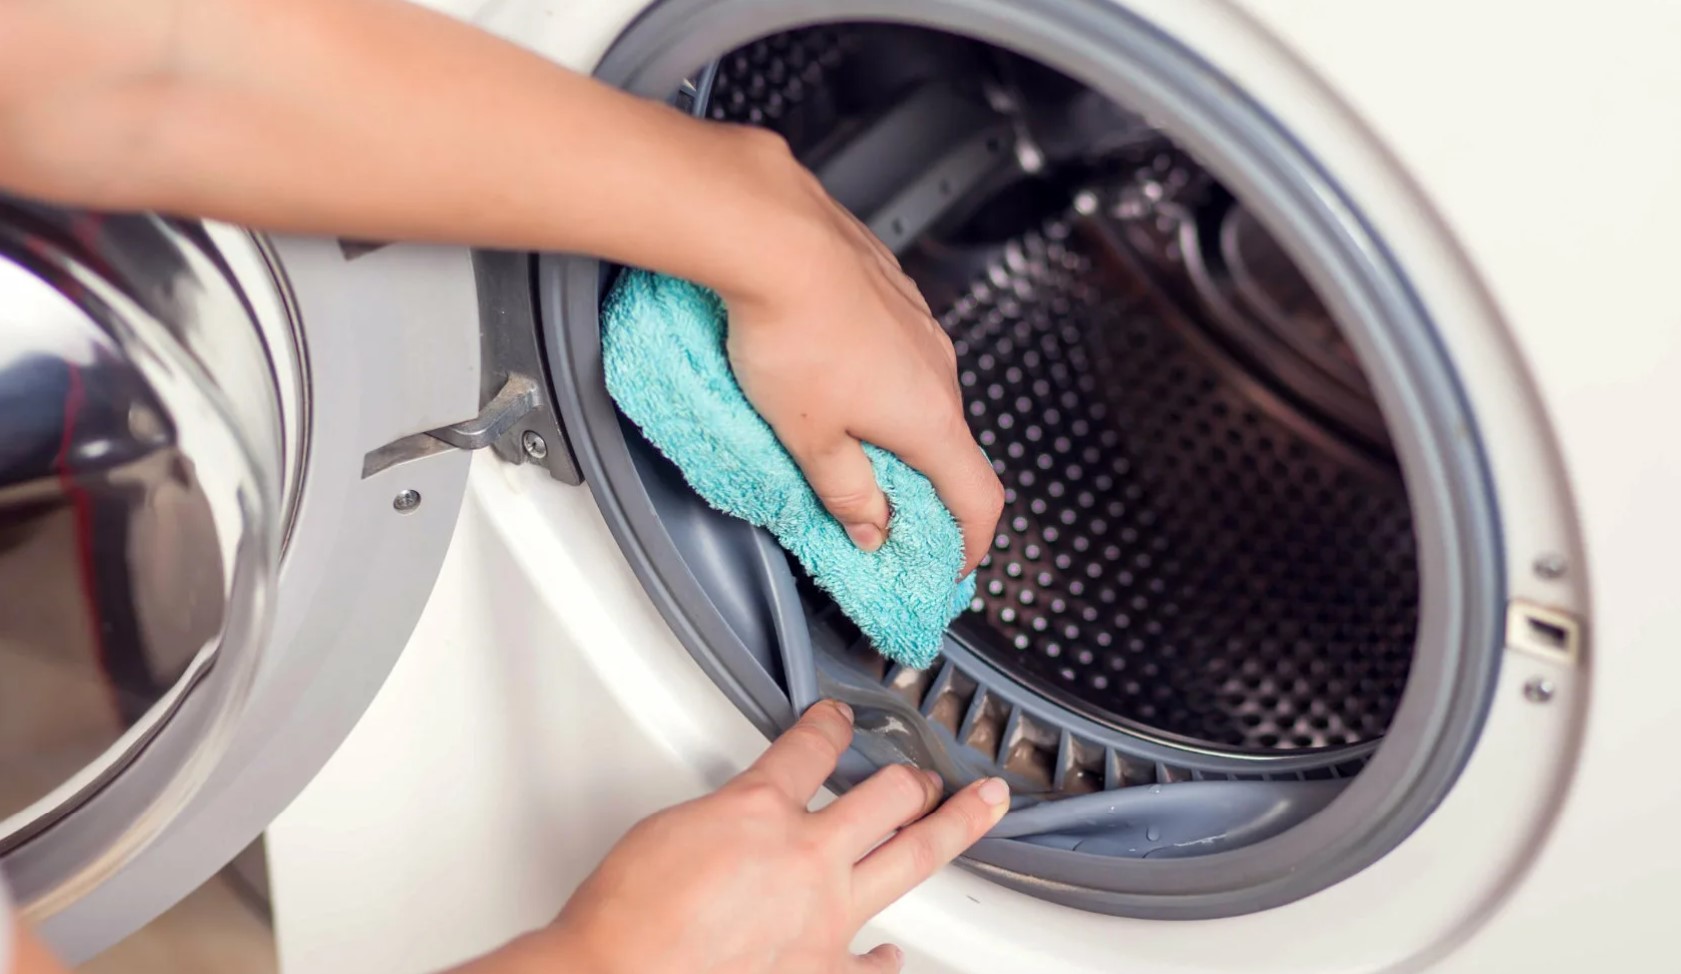 Reducción de la eficiencia y vida útil de la lavadora.